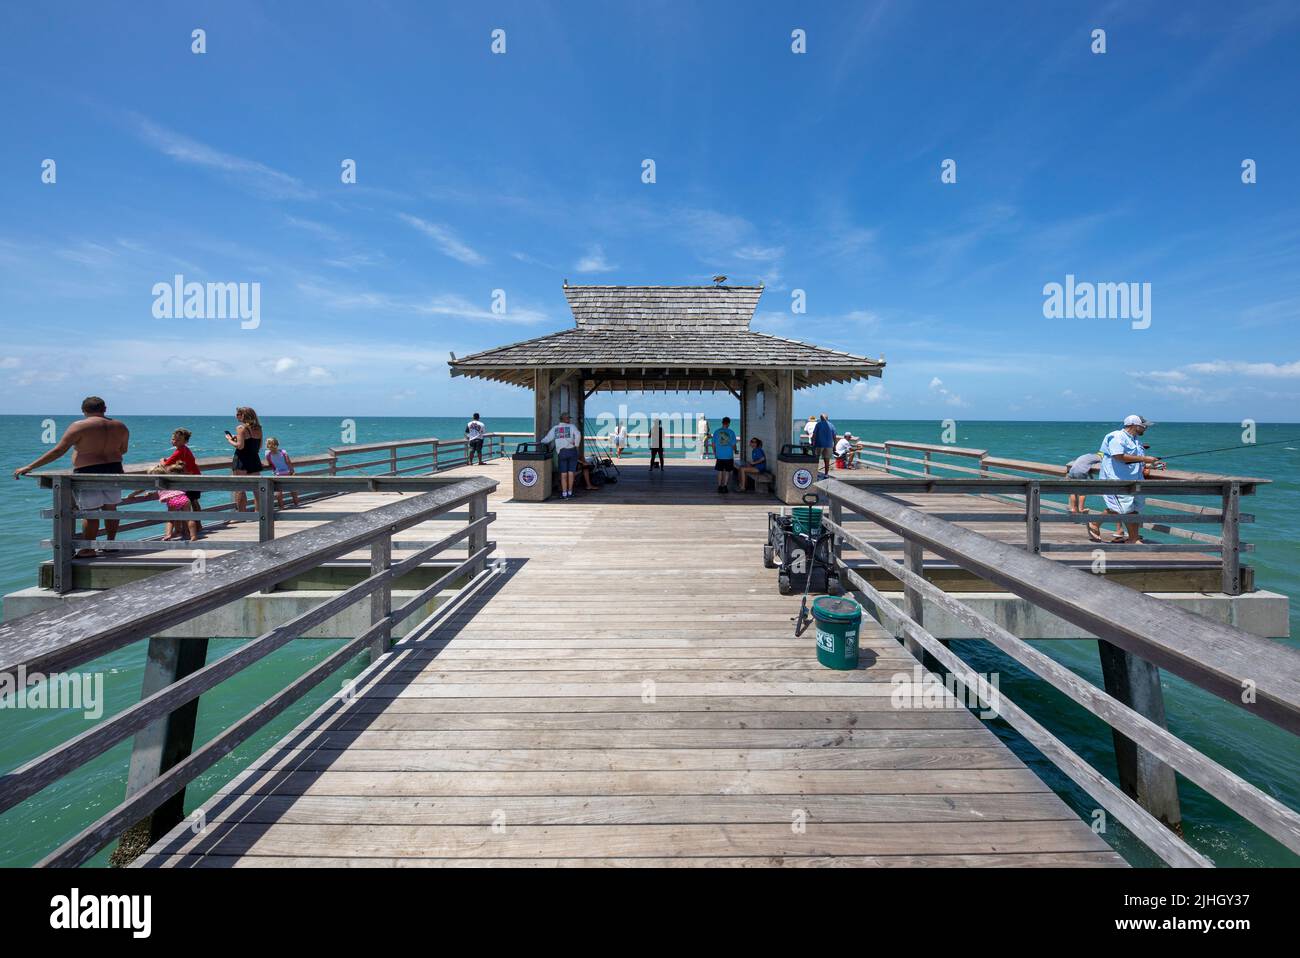 Porto di pescatori di Napoli Florida con turisti e abitanti locali. Iconica capanna a alla fine della struttura Foto Stock